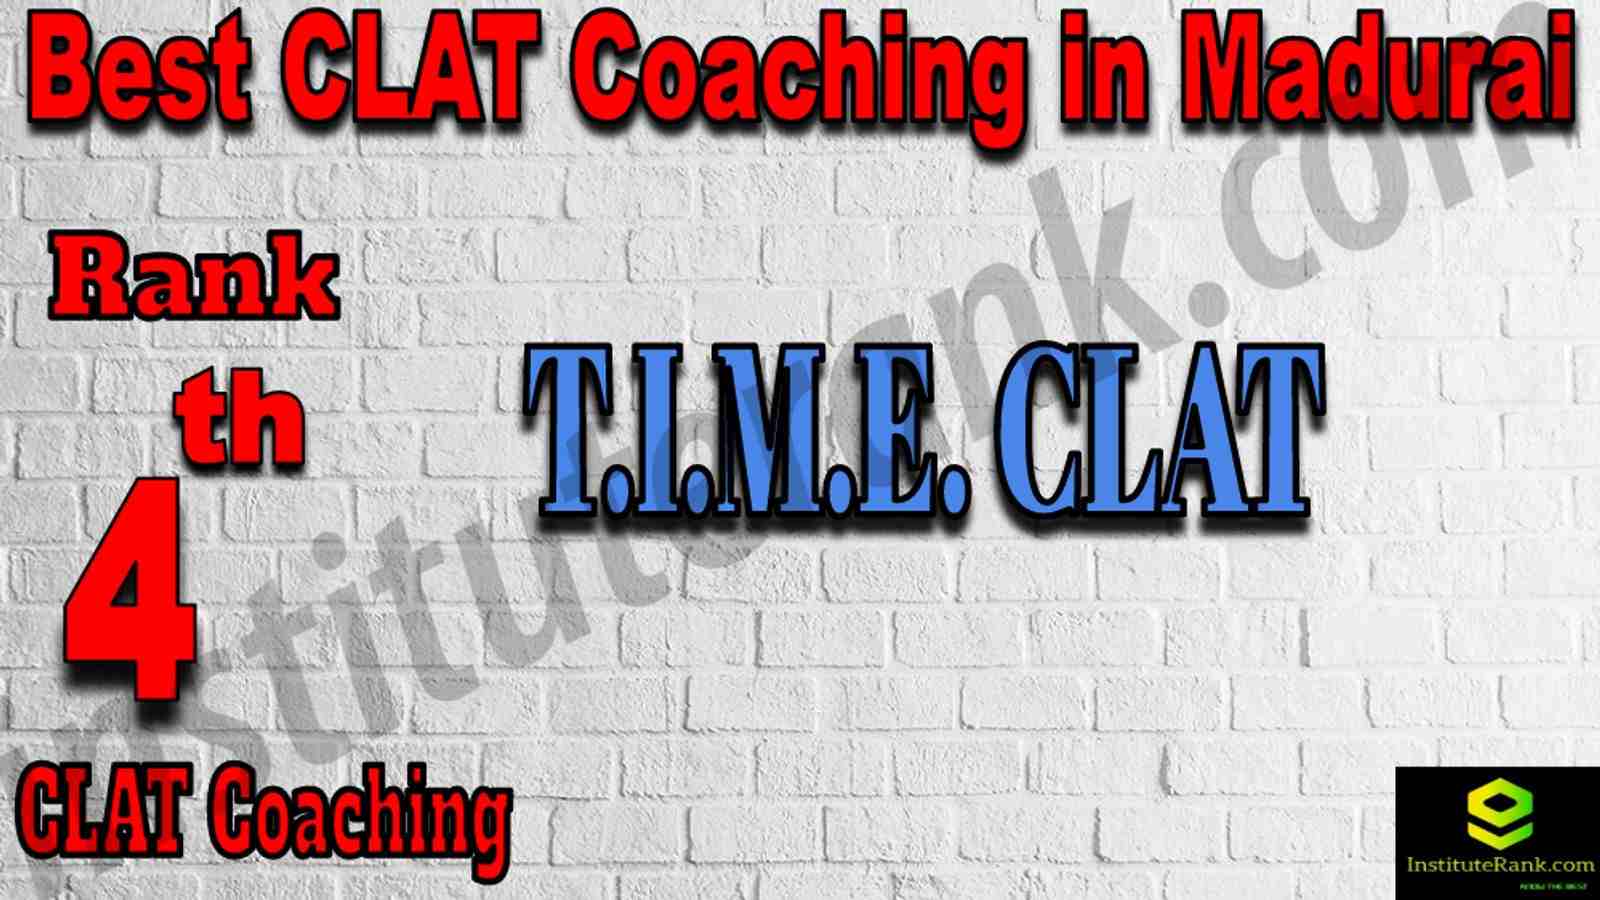 4th Best CALT Coaching in Madurai